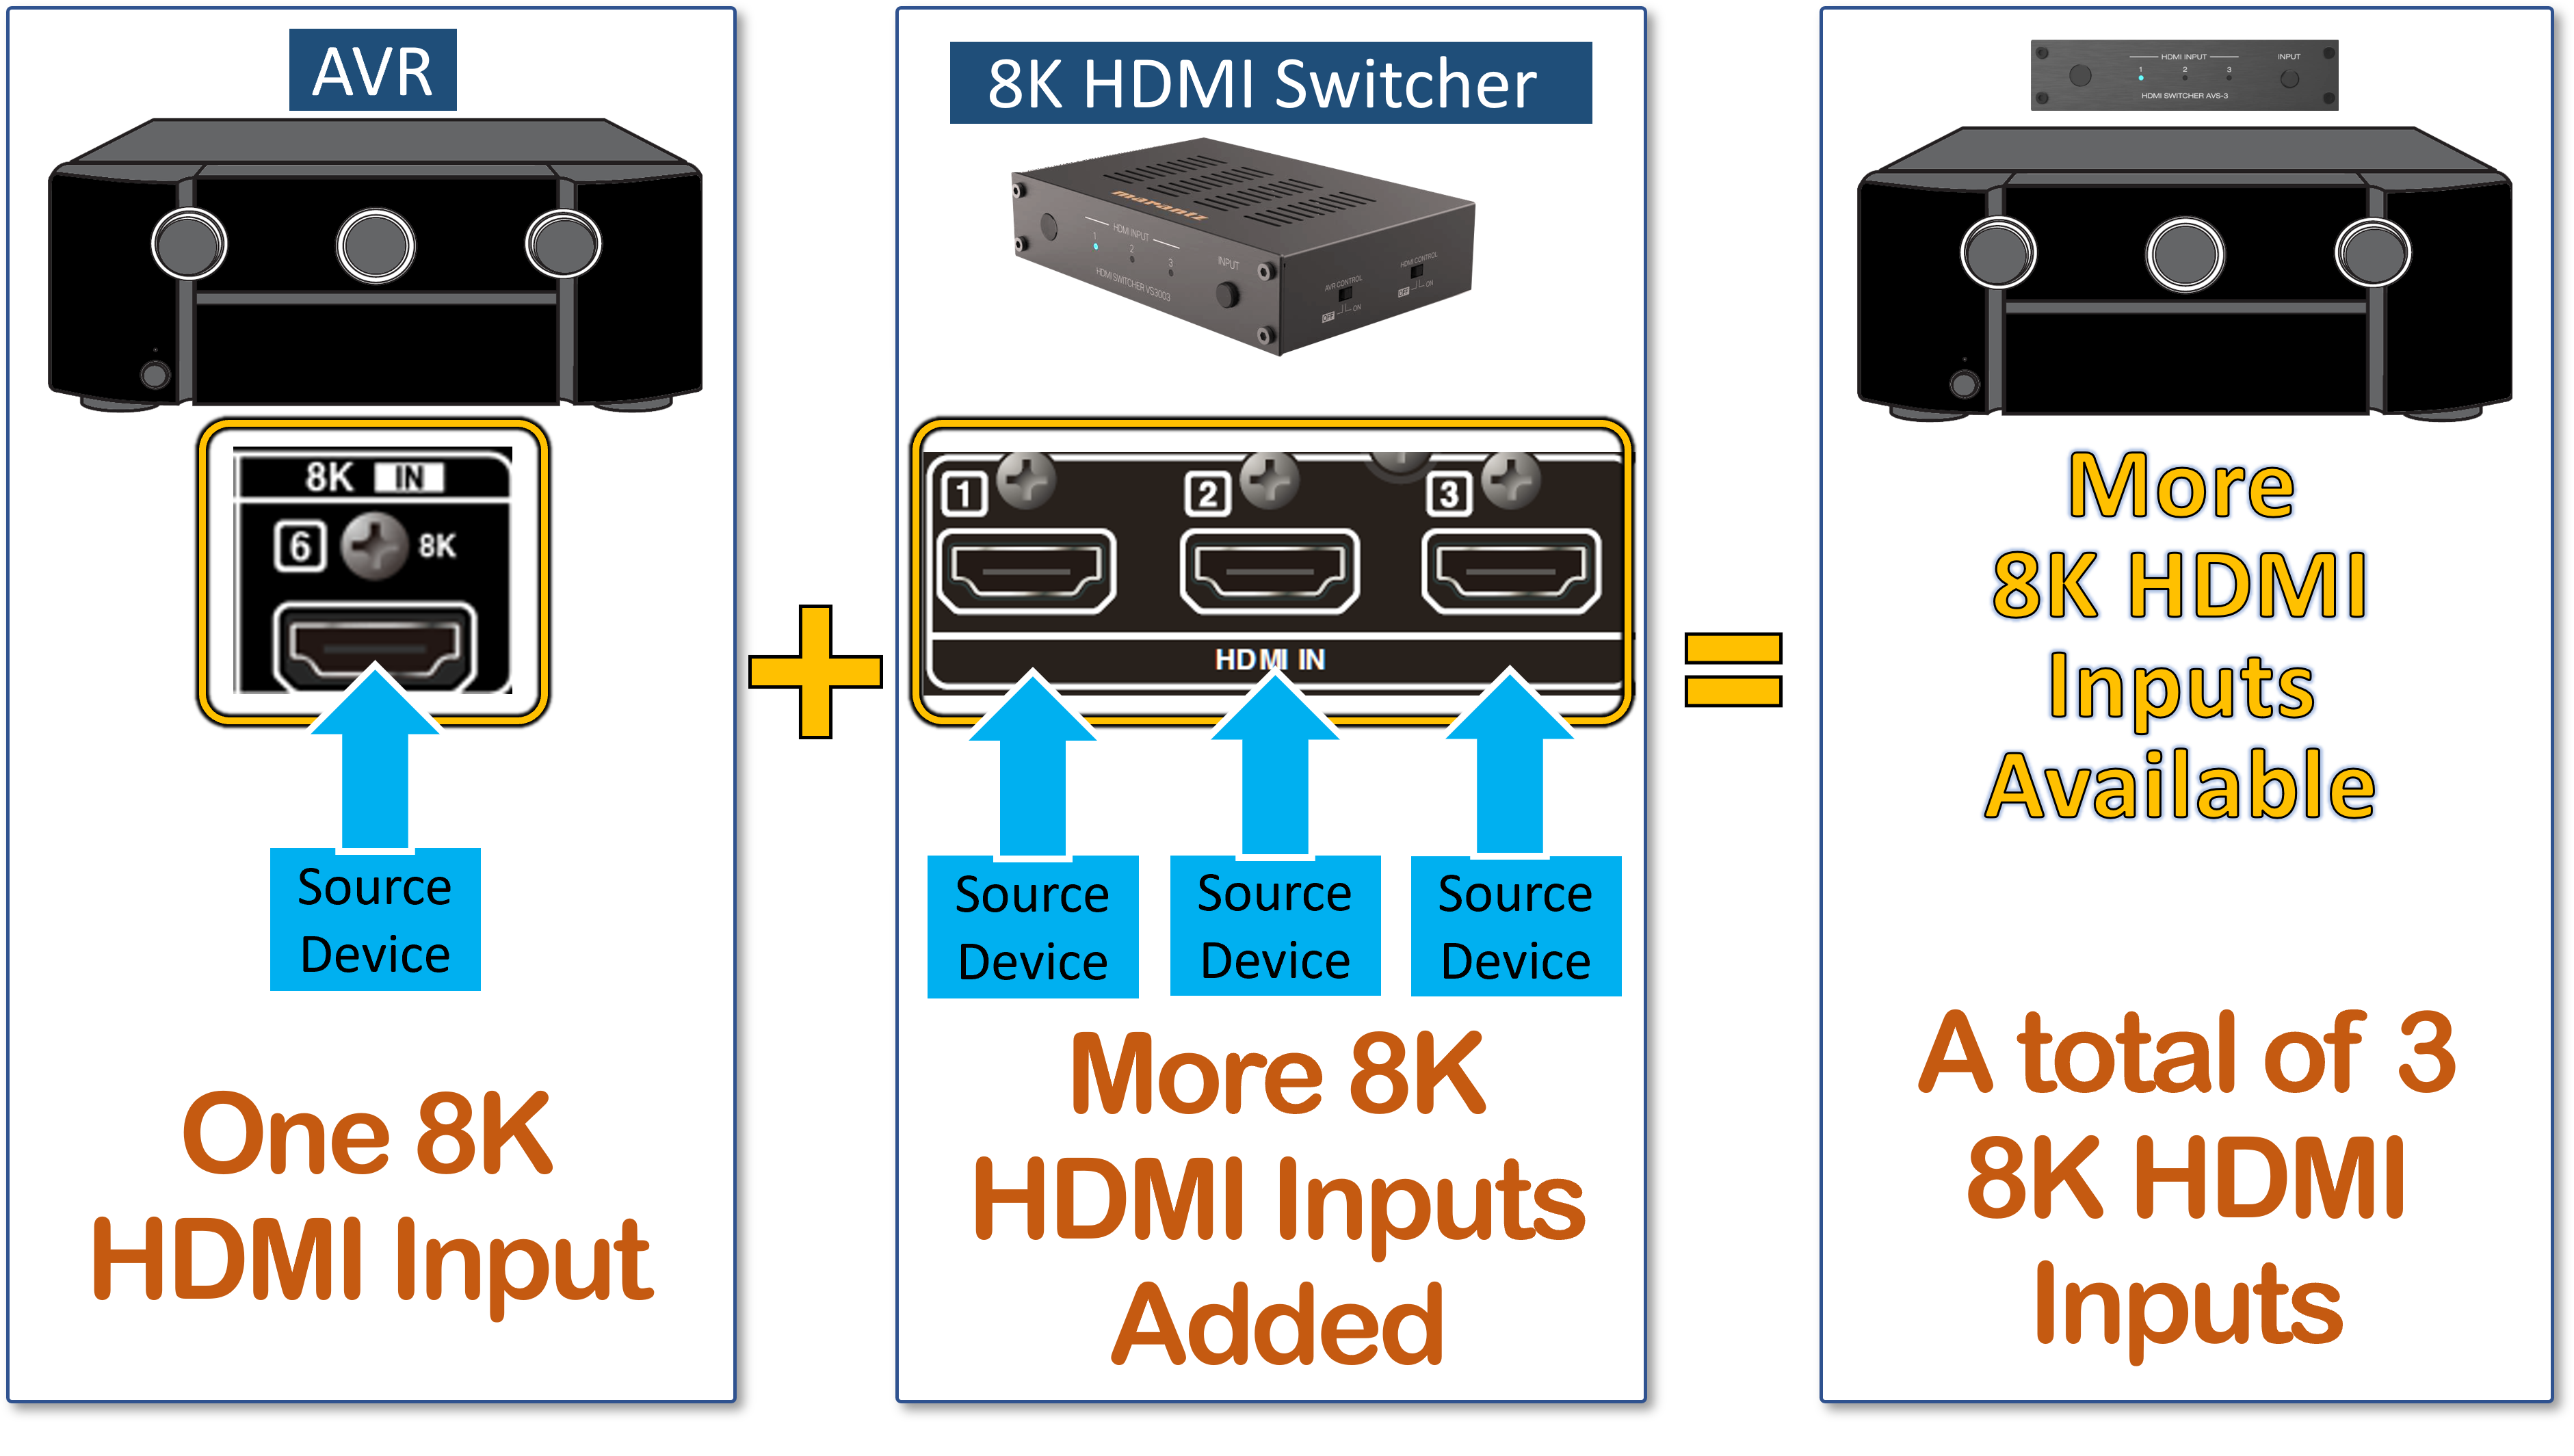 Marantz 8K HDMI Switcher model VS3003